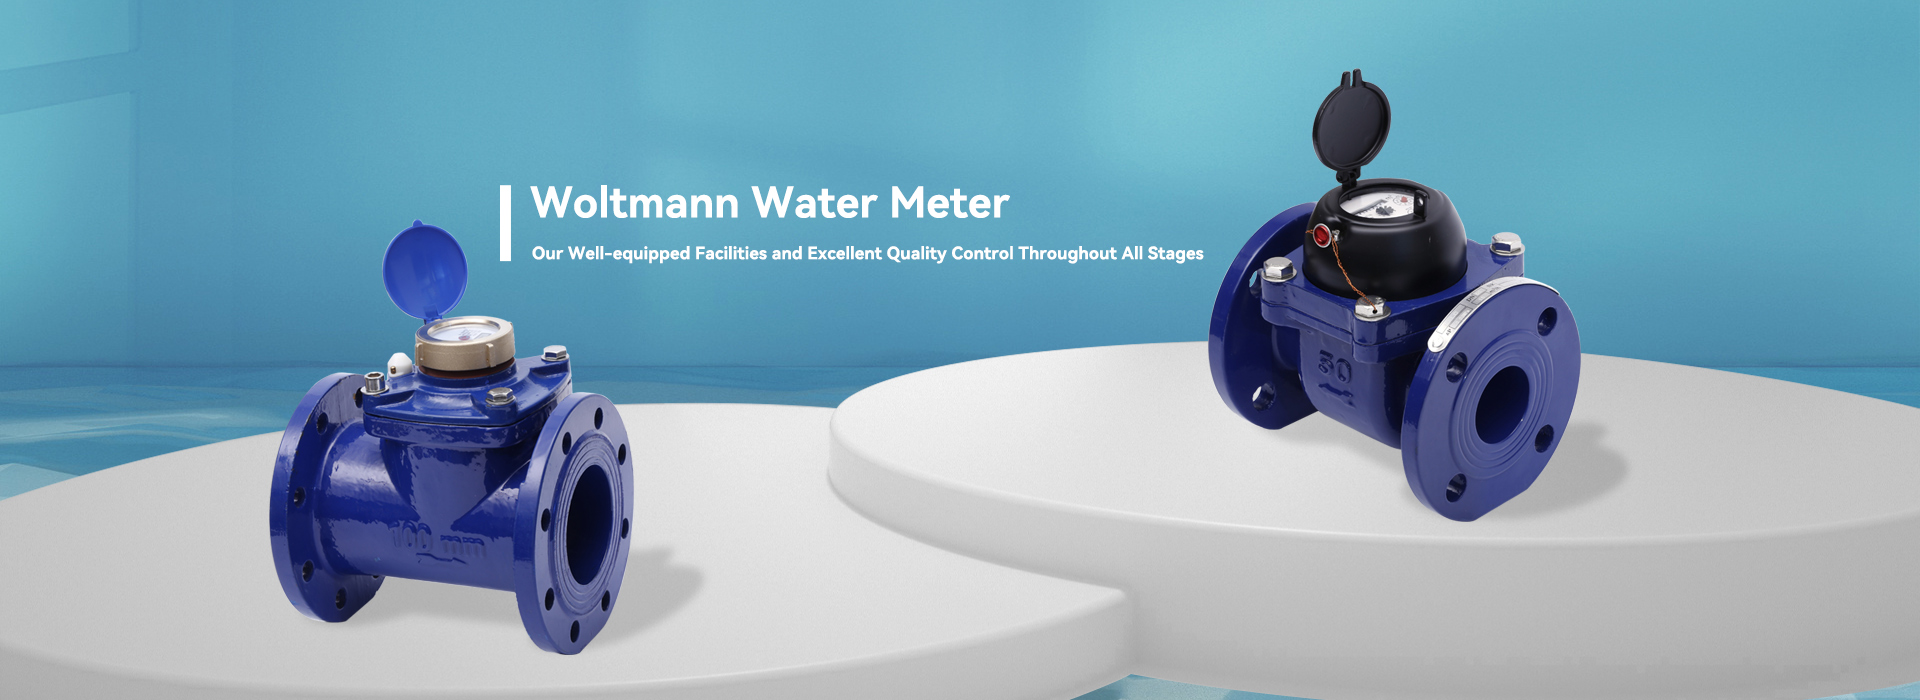 Fabricants et fournisseurs de compteurs d’eau Woltmann